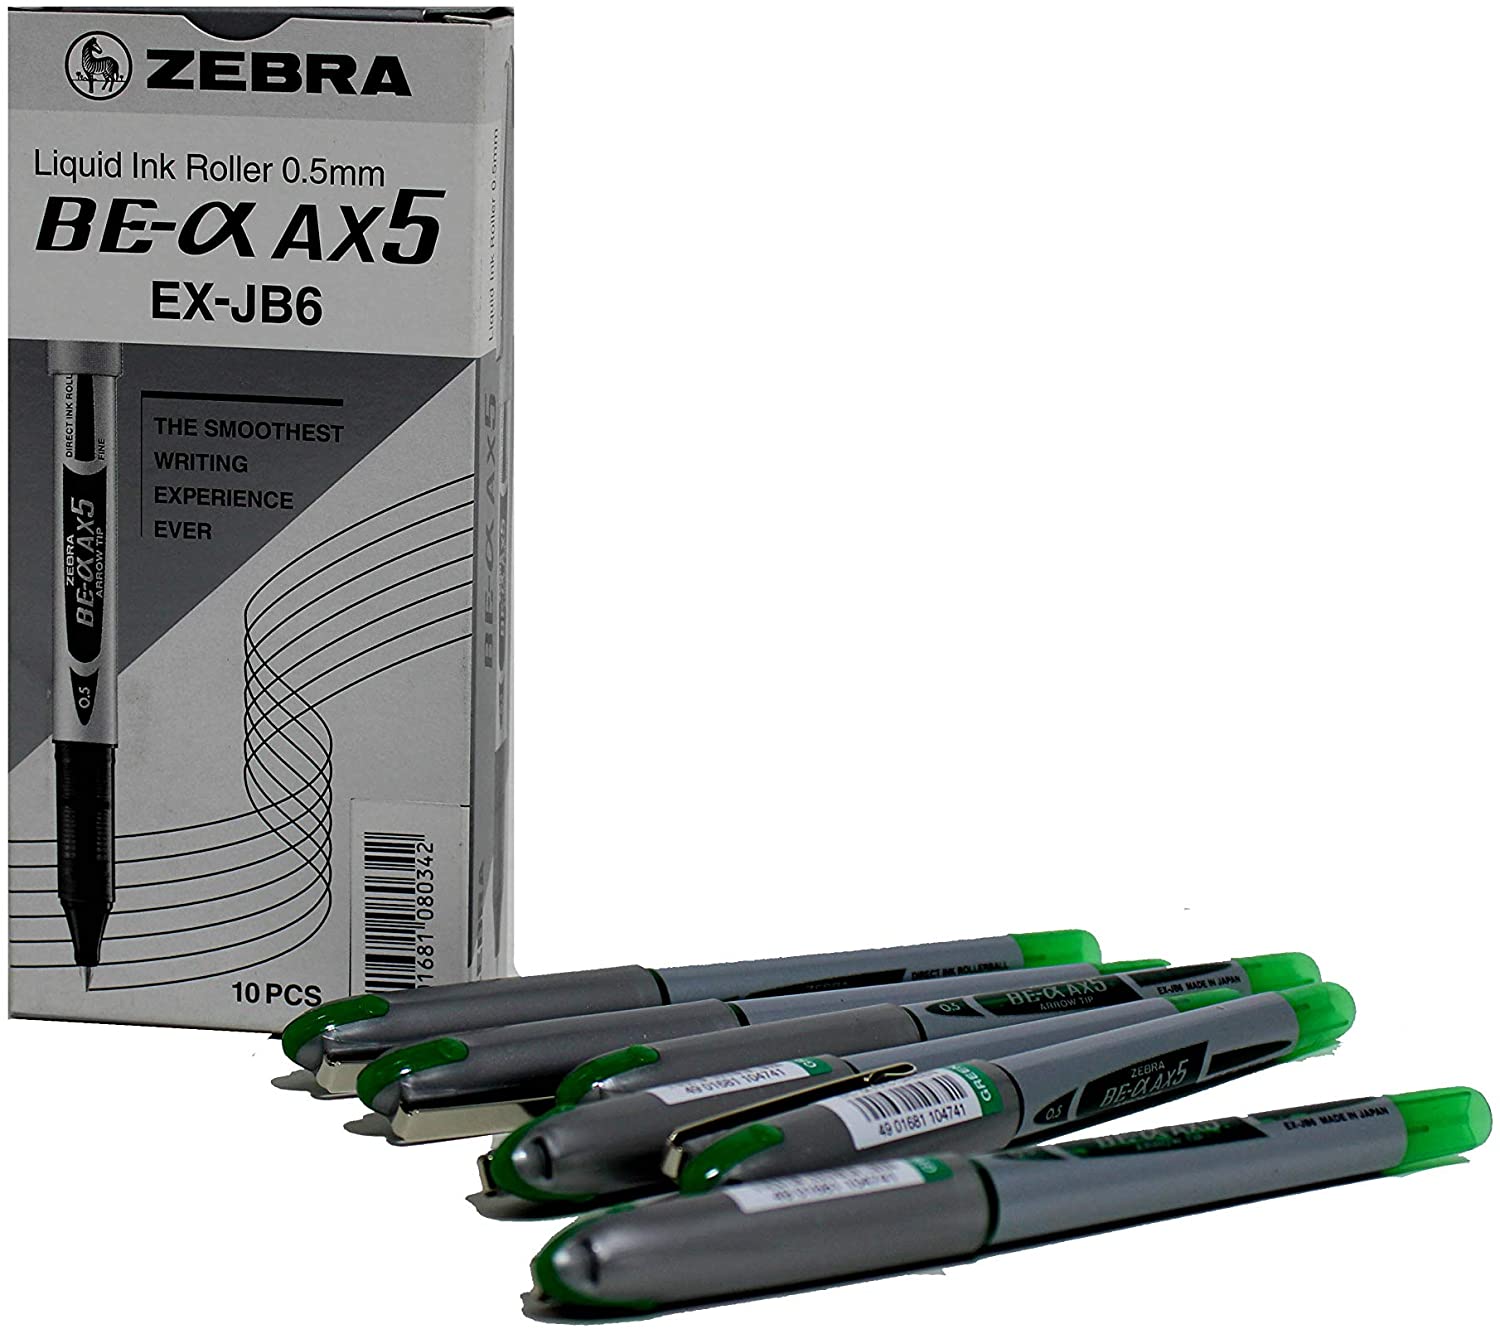 Zebra 0.7 Direct Ink Roller Ball Pen DX7 Green